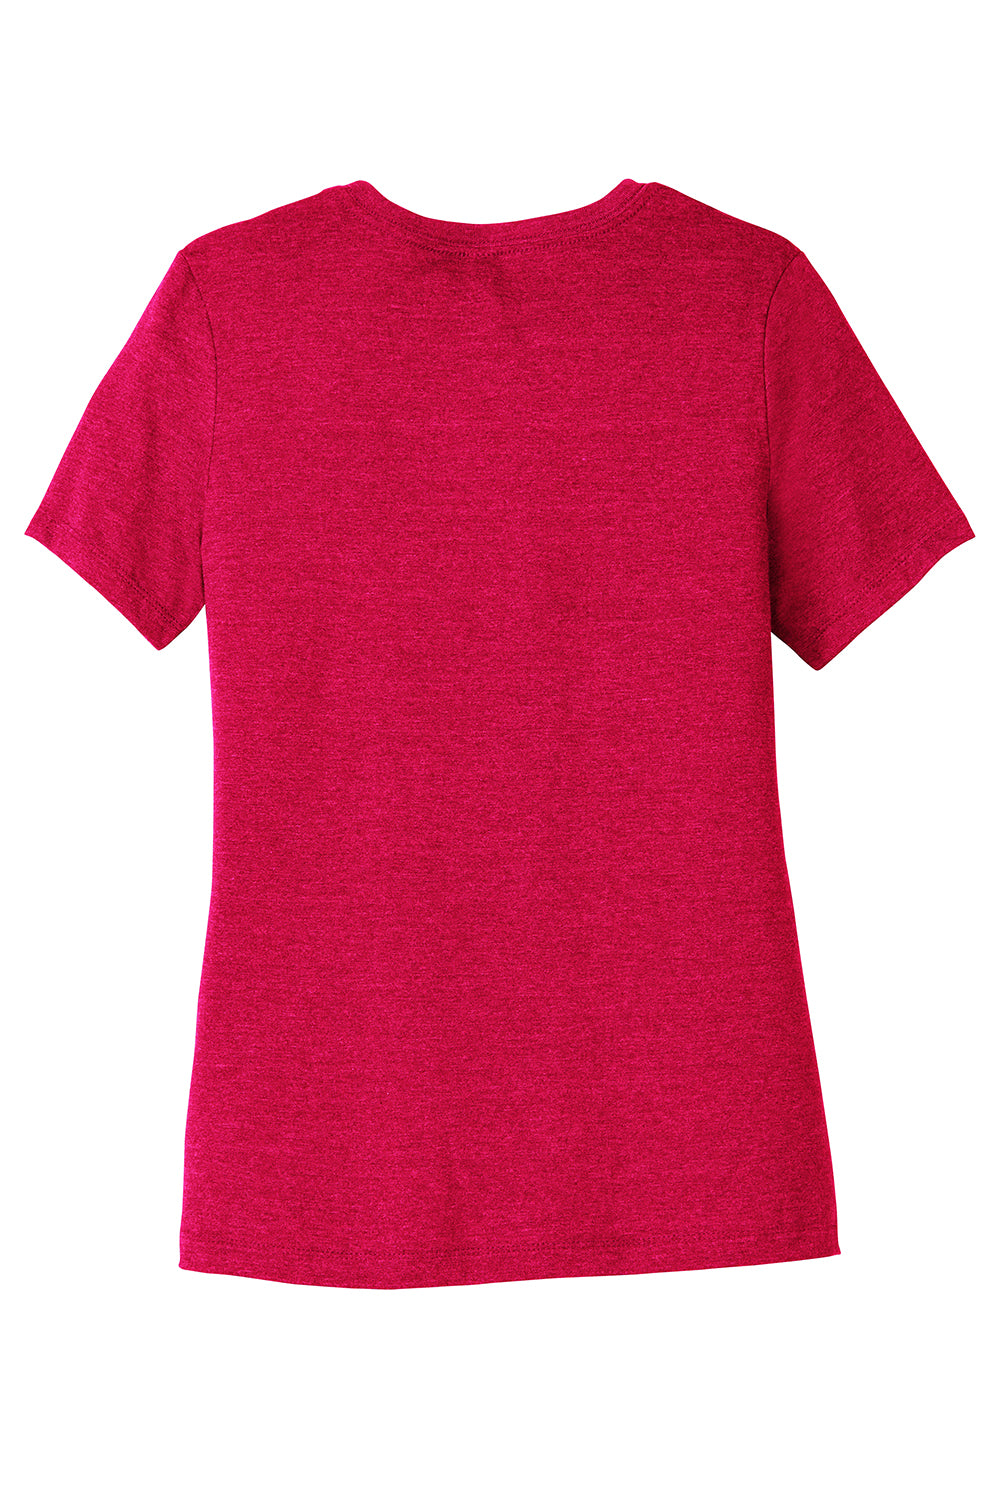 Bella + Canvas BC6400CVC/6400CVC Womens CVC Short Sleeve Crewneck T-Shirt Heather Red Flat Back